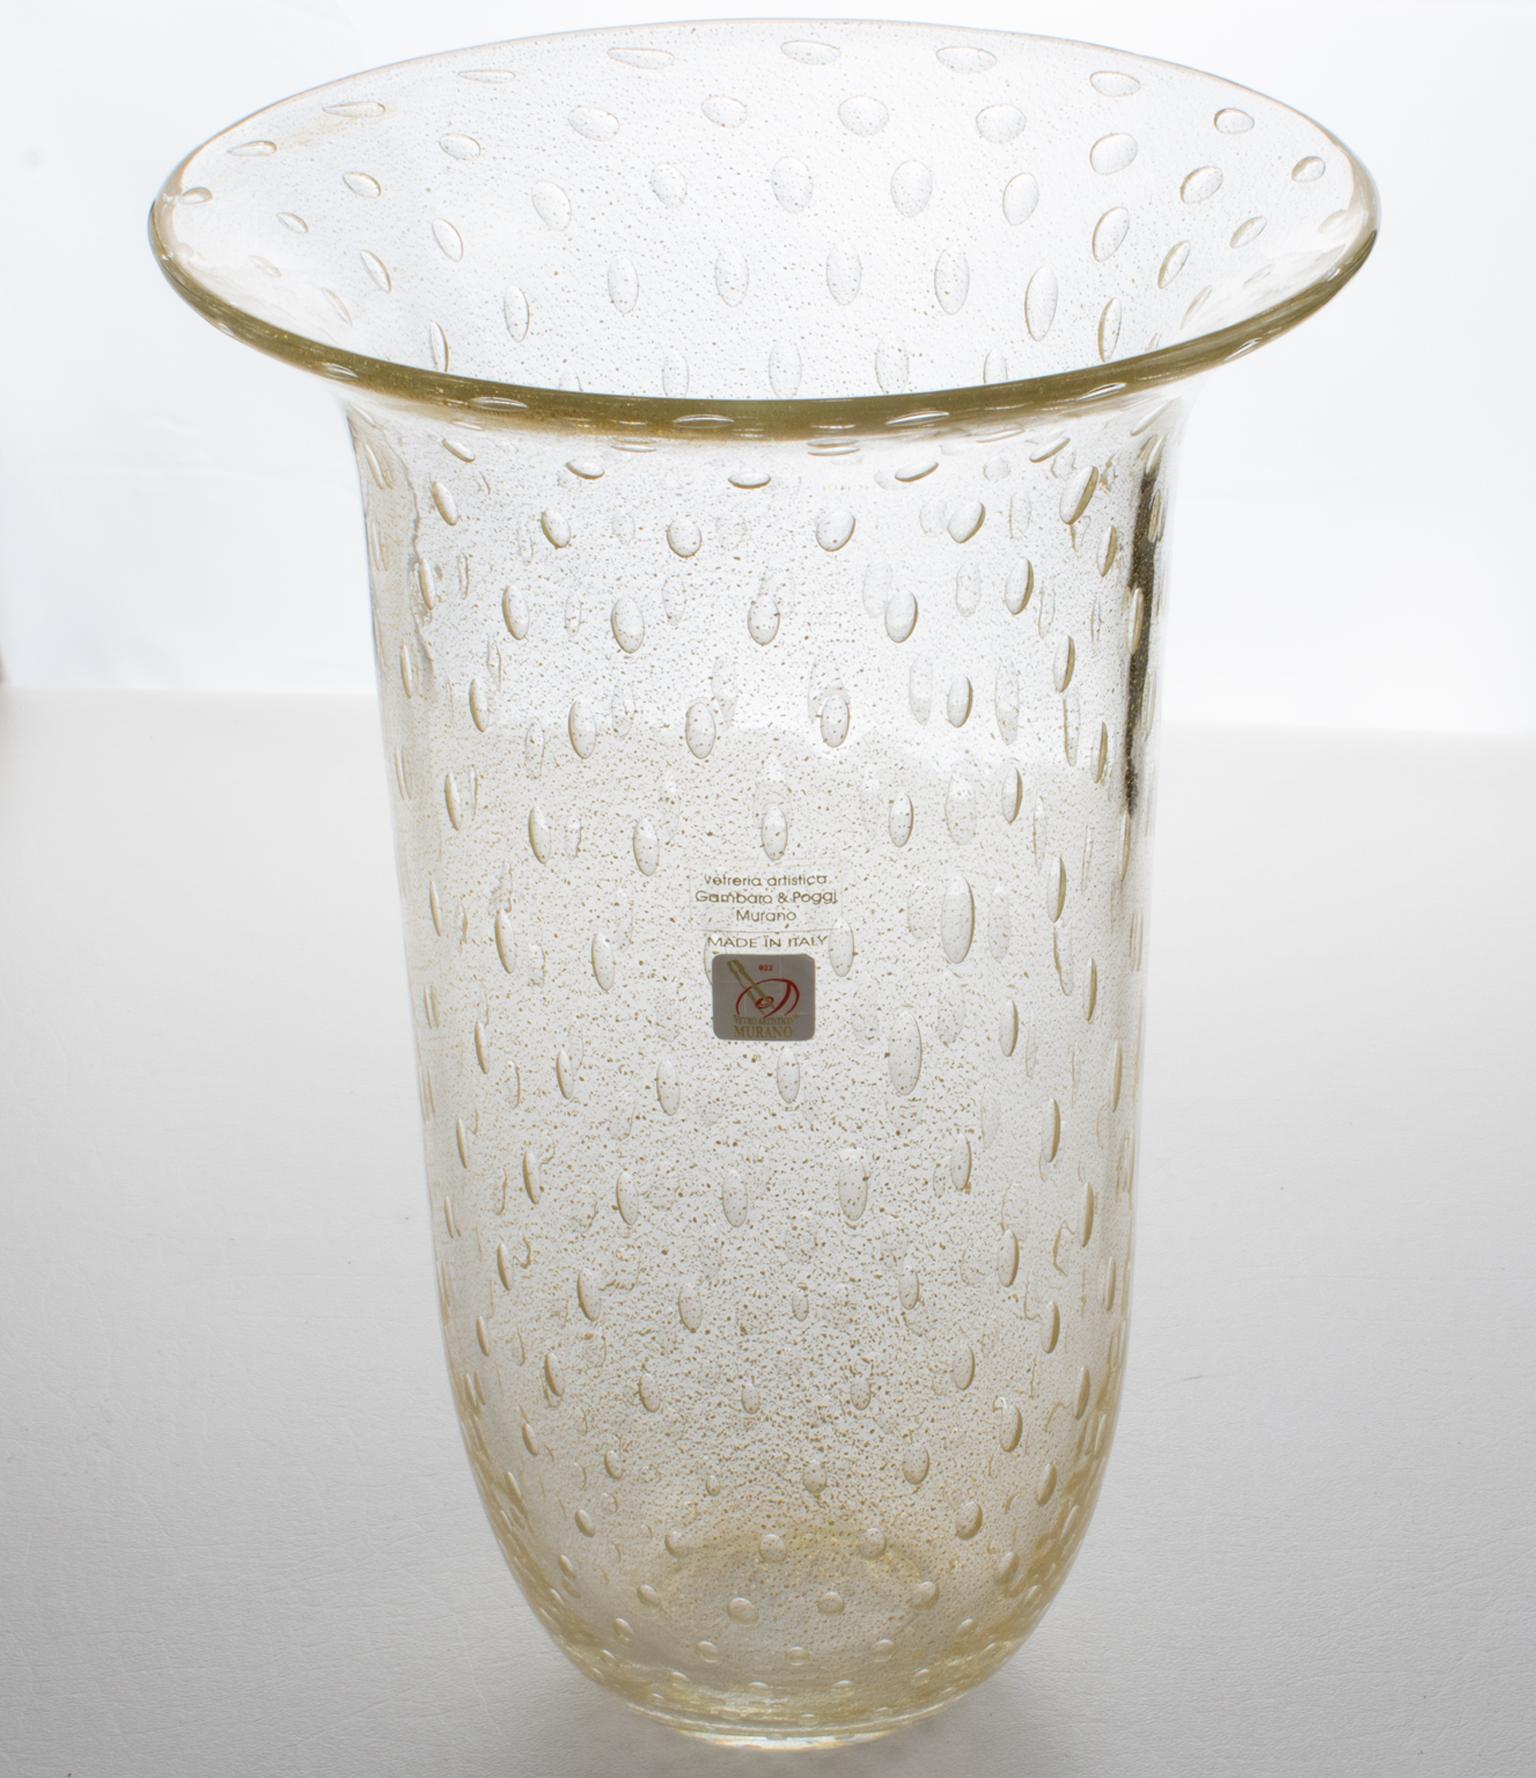 Gambaro & Poggi, de Murano, fabricaron artesanalmente este precioso jarrón de vidrio soplado de Arte Italiano. La forma de tulipán alto y escultural tiene inclusiones de escamas de oro infundidas y la técnica de la 